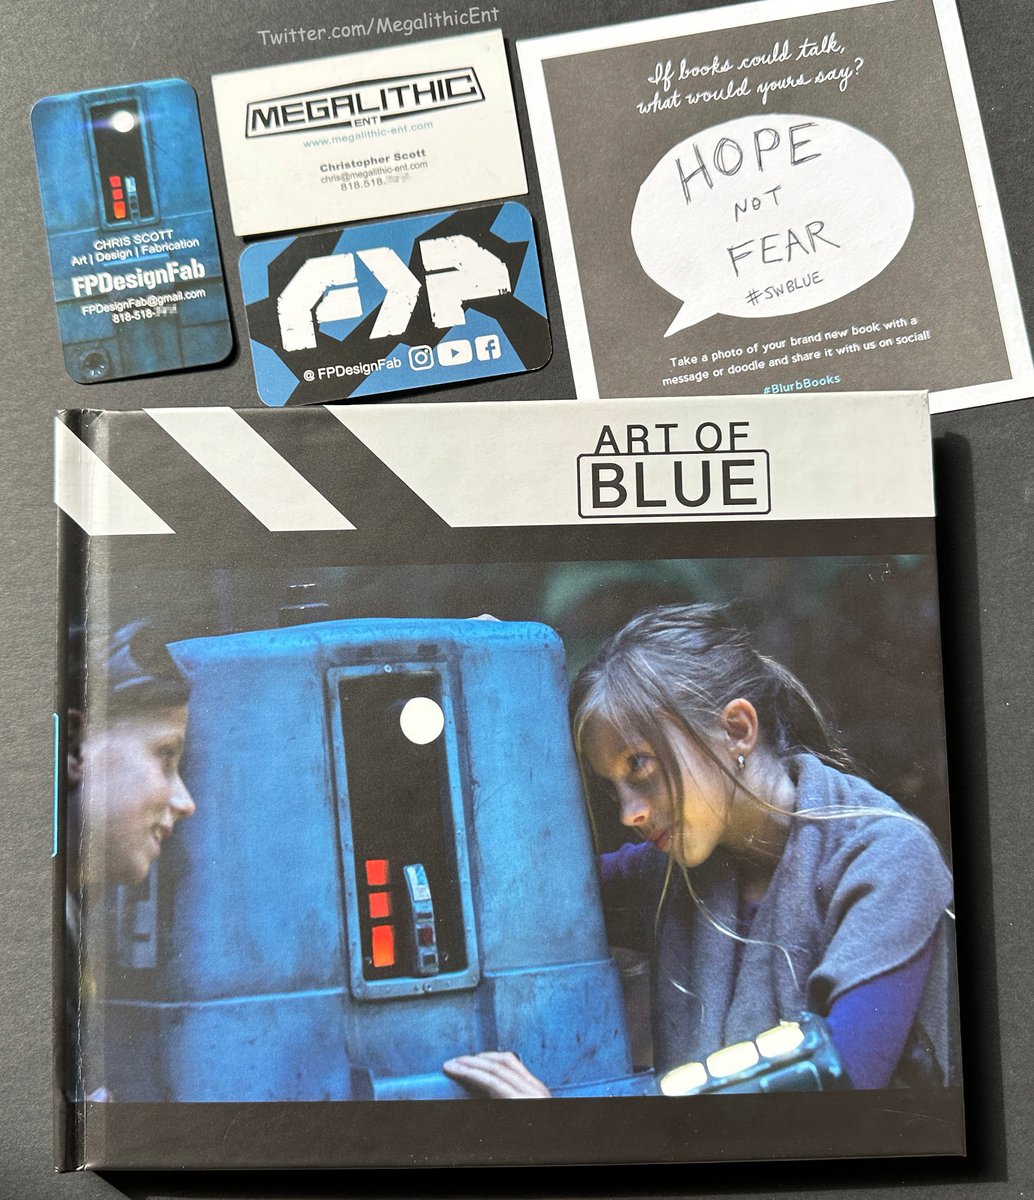 Hope Not Fear. #SWBlue #BlurbBooks #ArtOfBlue #filmmaker #productiondesigner #artist #books